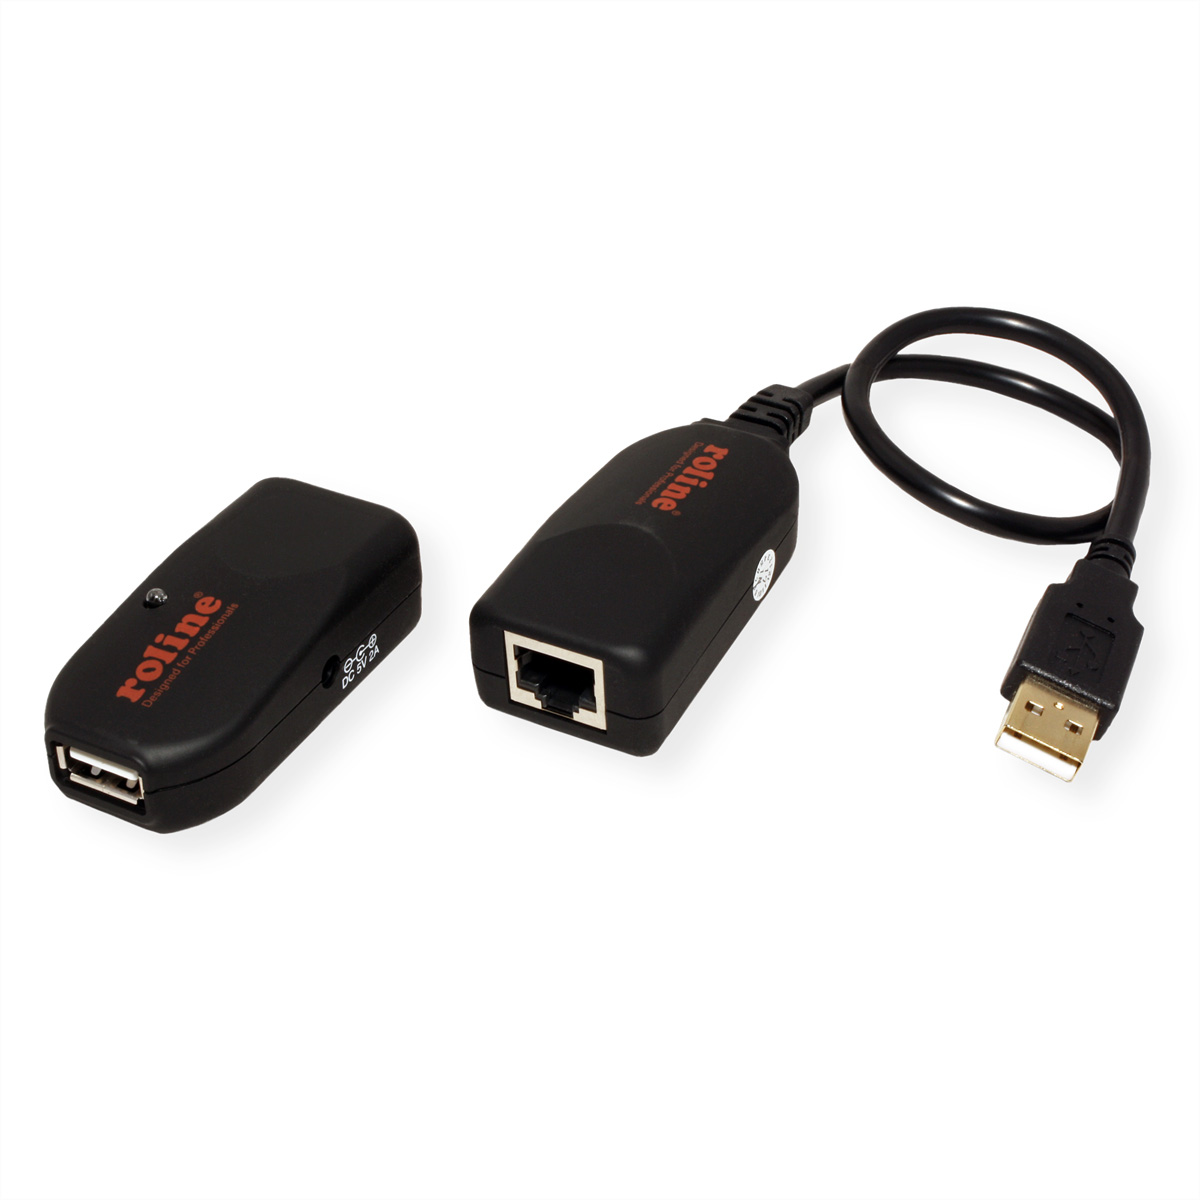 ROLINE USB 2.0 Verlängerung RJ45, max. 50m über USB-Verlängerung